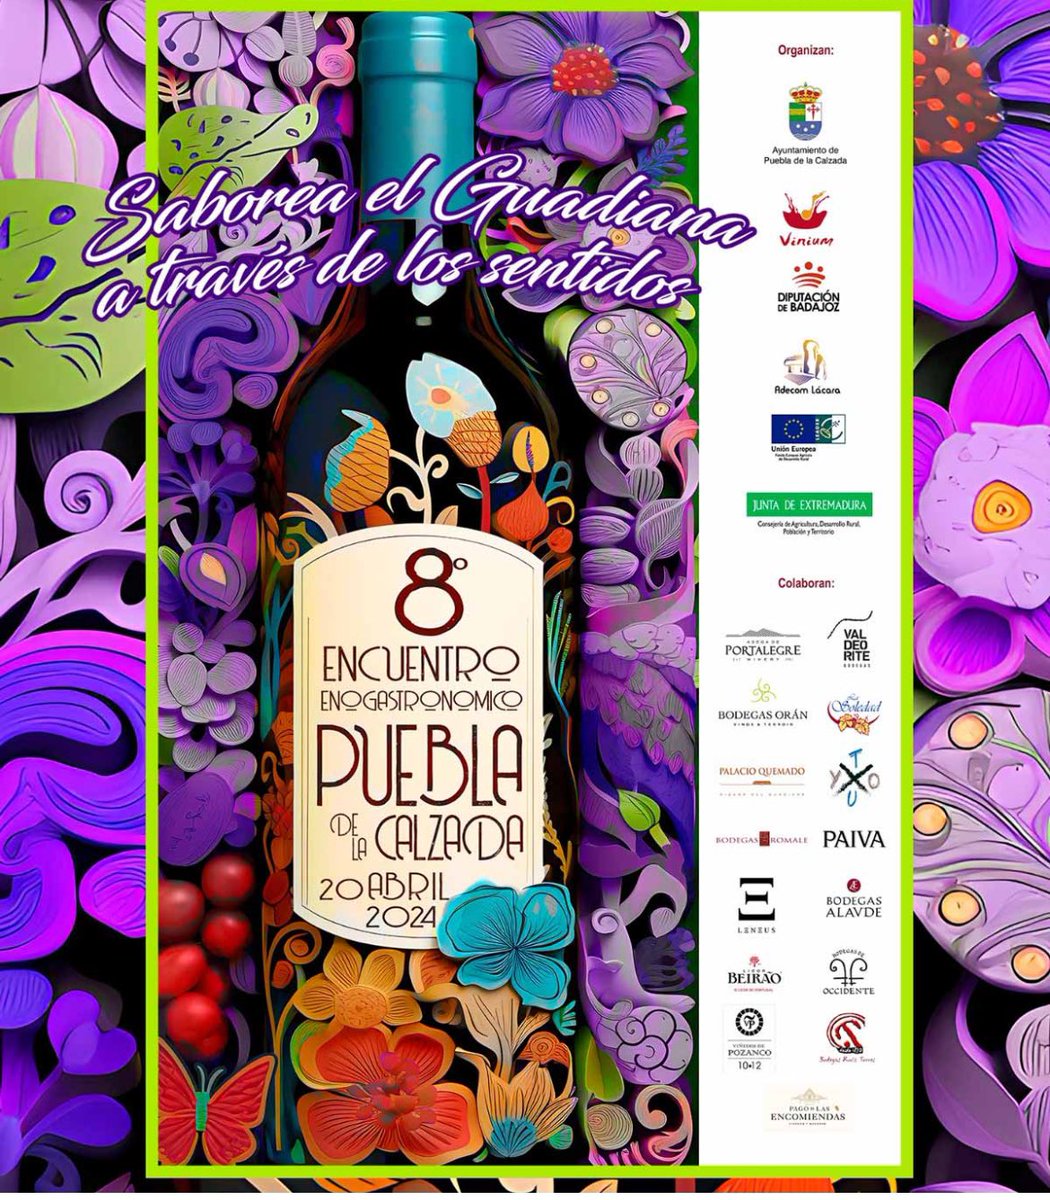 🗣️Vive la tradición vinícola en el 8º Encuentro Enogastronómico Vegas Bajas de Puebla de la Calzada (Badajoz)
🍇 
#PalacioQuemado ventanadigital.com/vive-la-tradic…